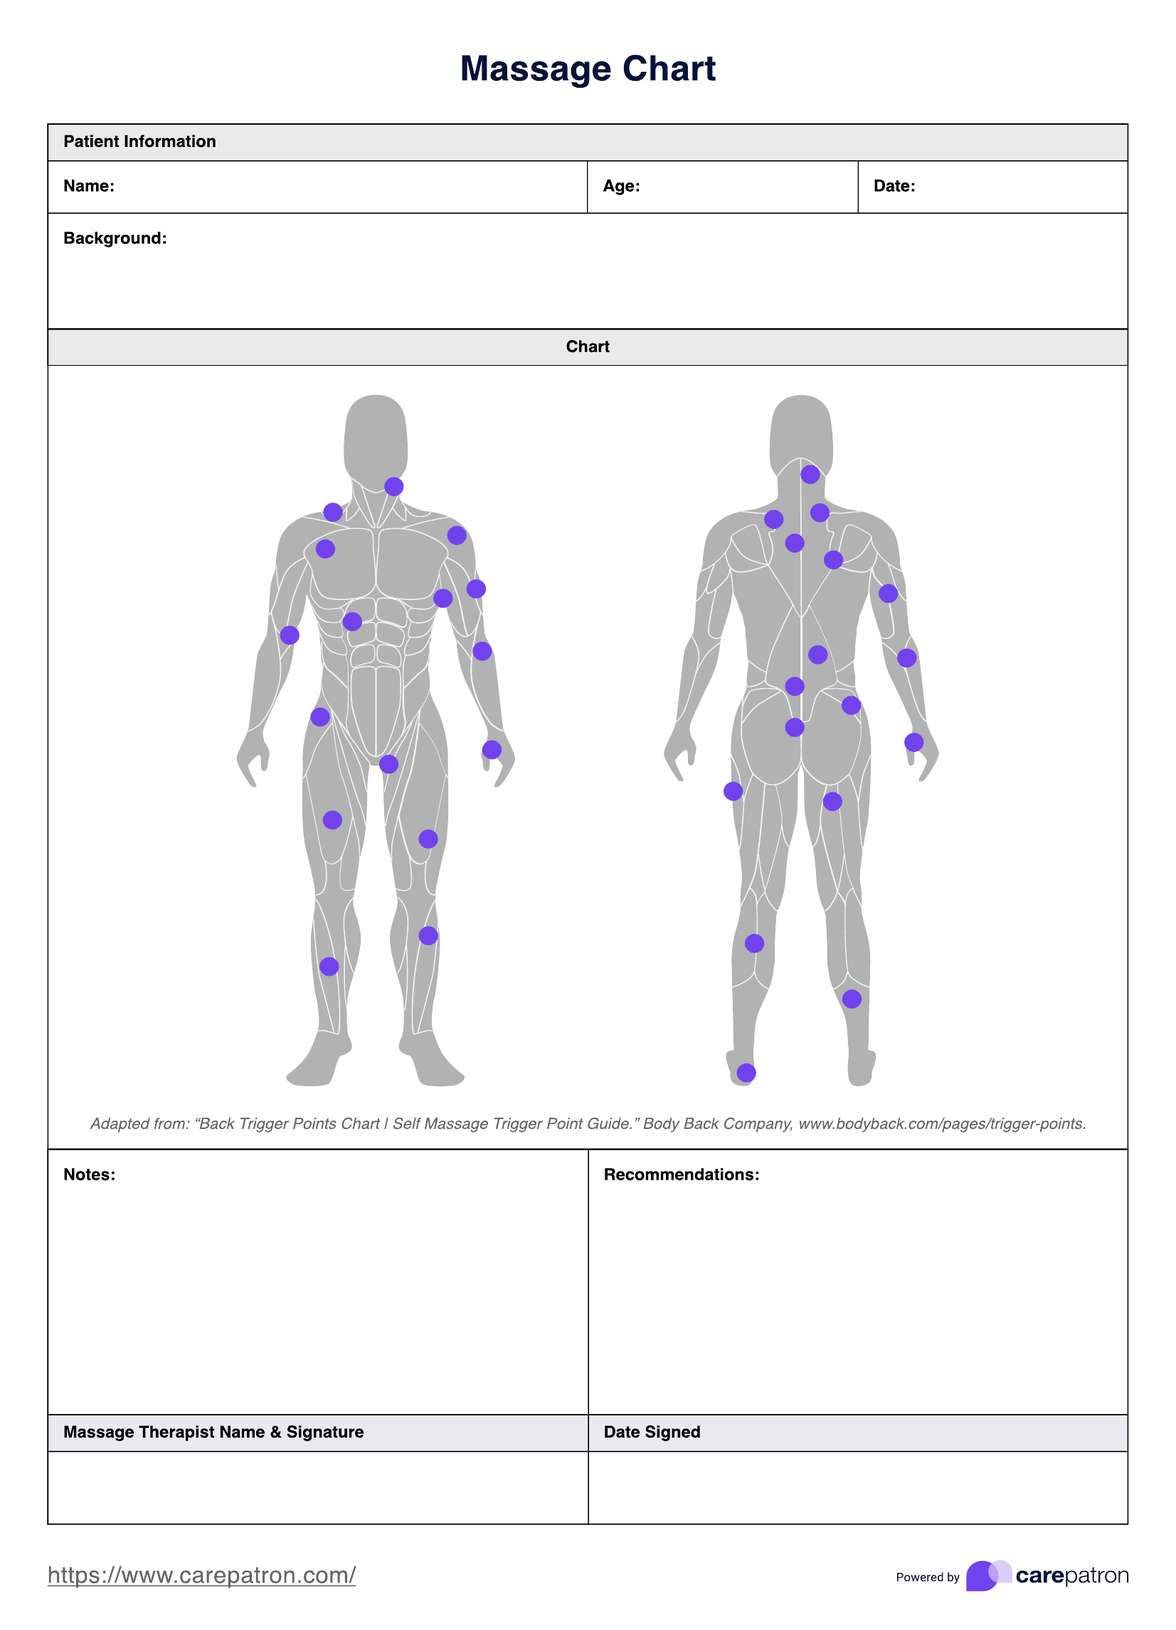 Massage Chart PDF Example